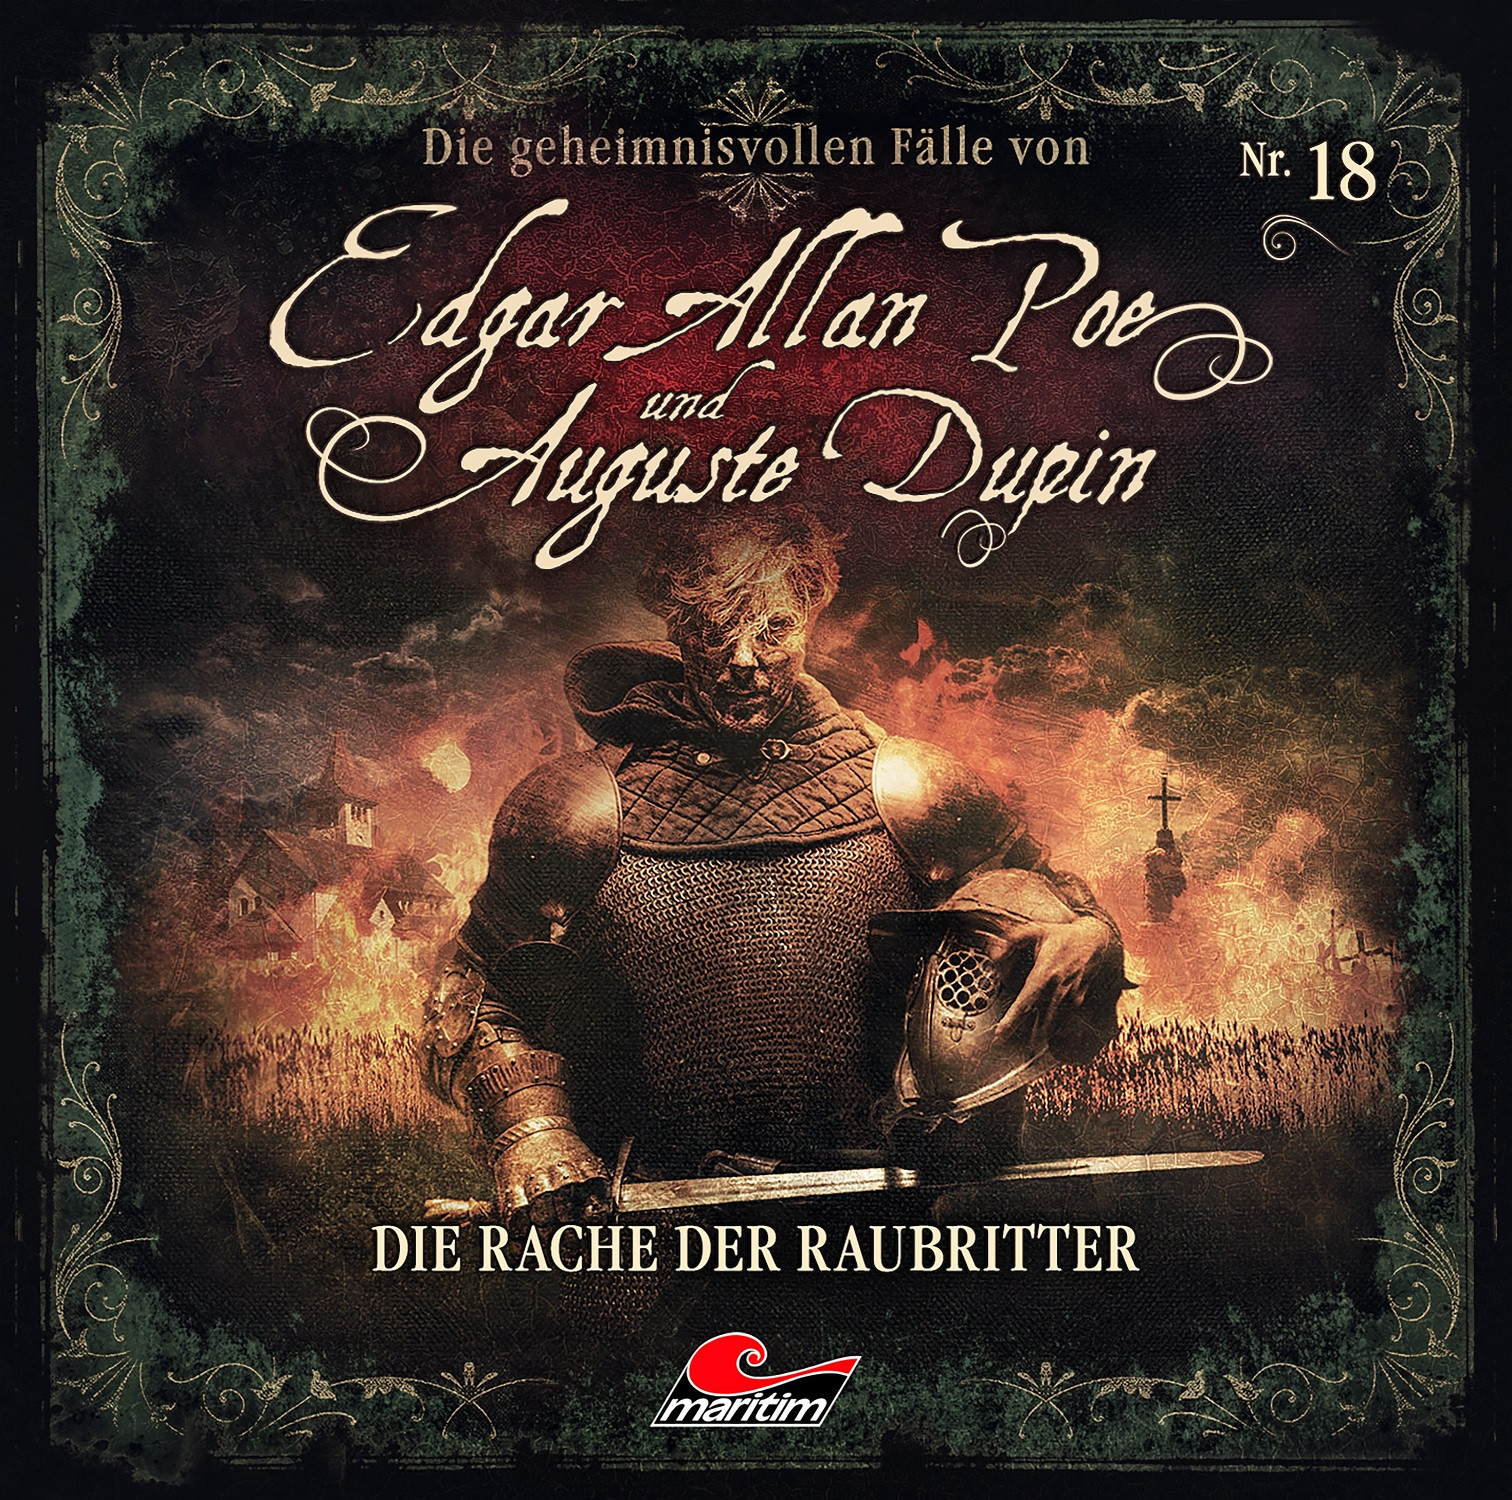 Edgar Allan Poe und Auguste Dupin 18: Die Rache der Raubritter